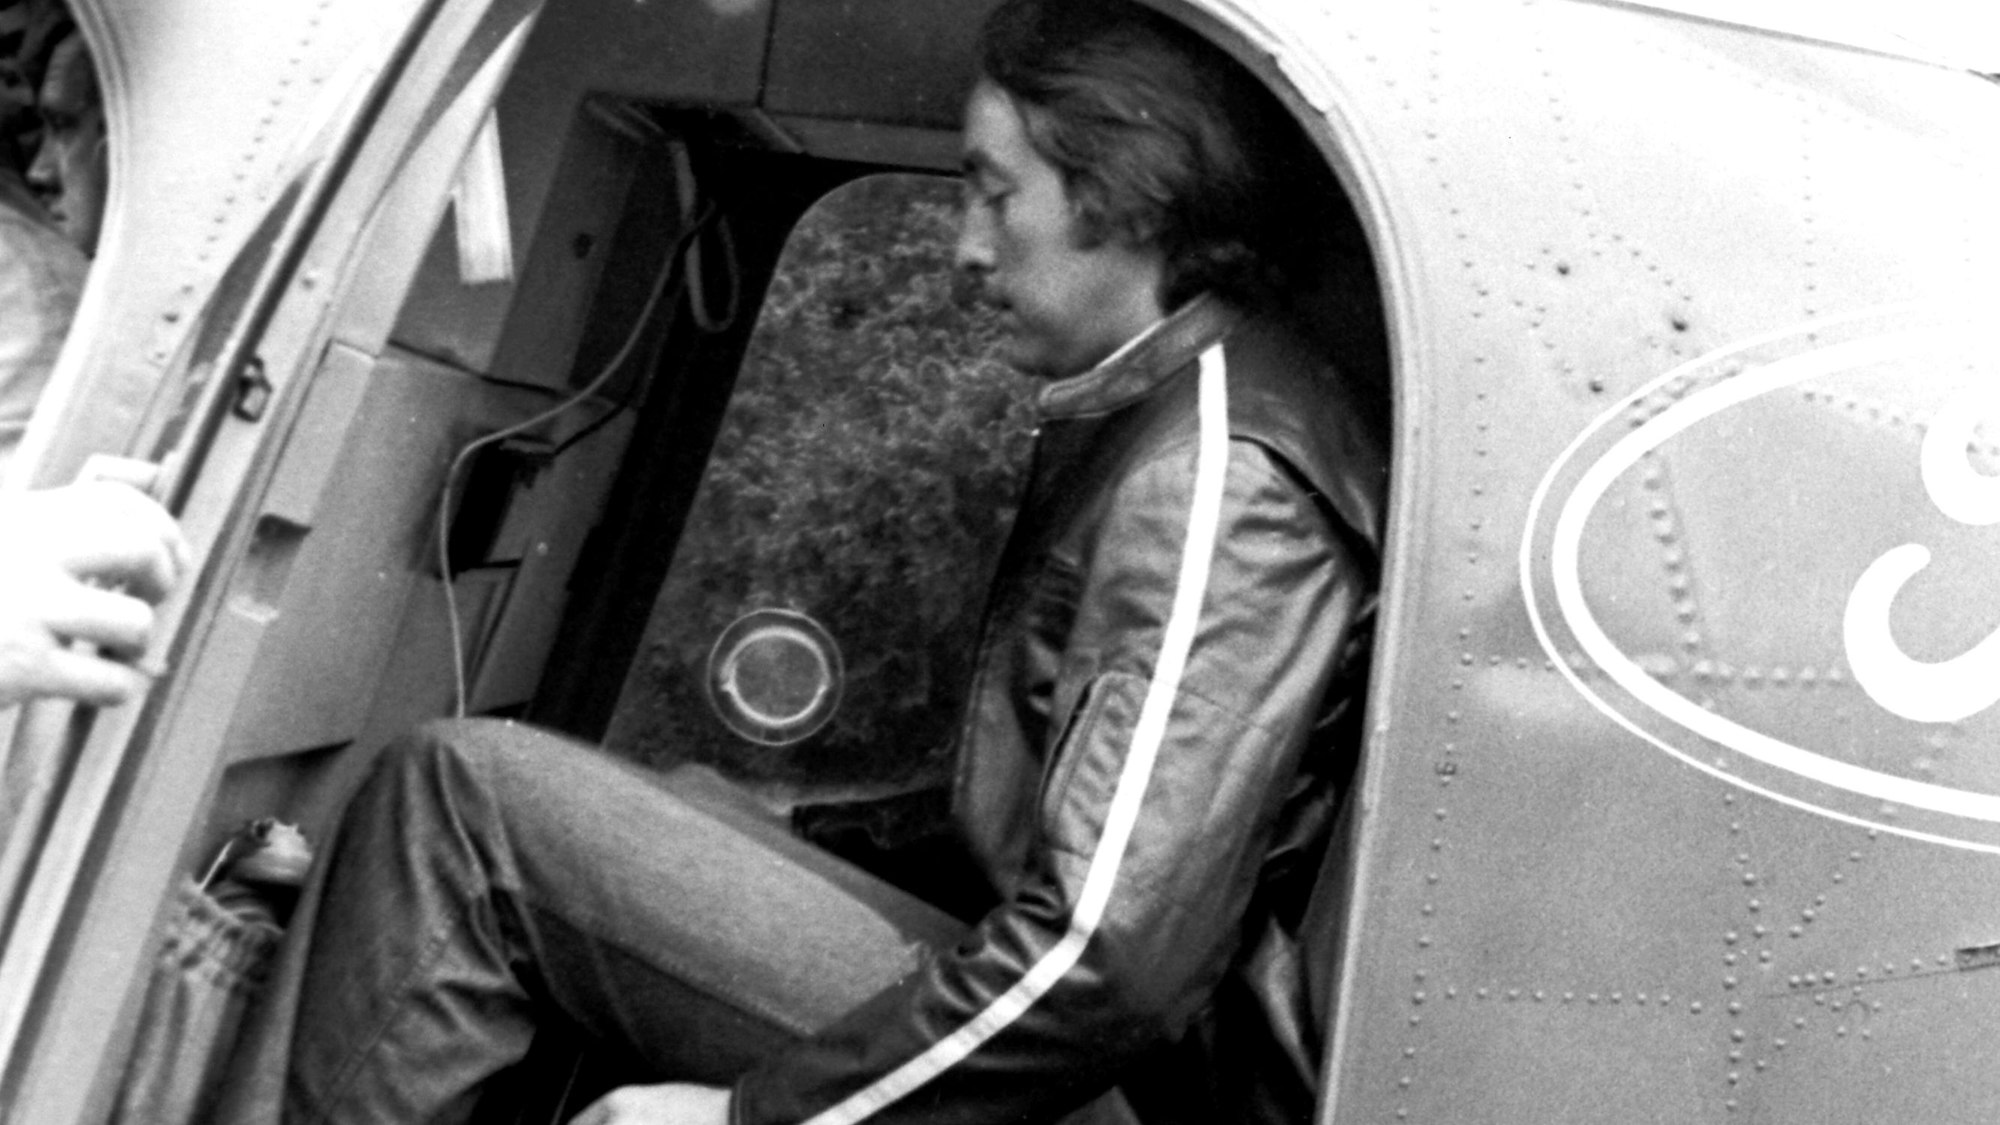 Emerson Fittipaldi sitzt in einem Hubschrauber. Das Bild ist schwarz-weiß.